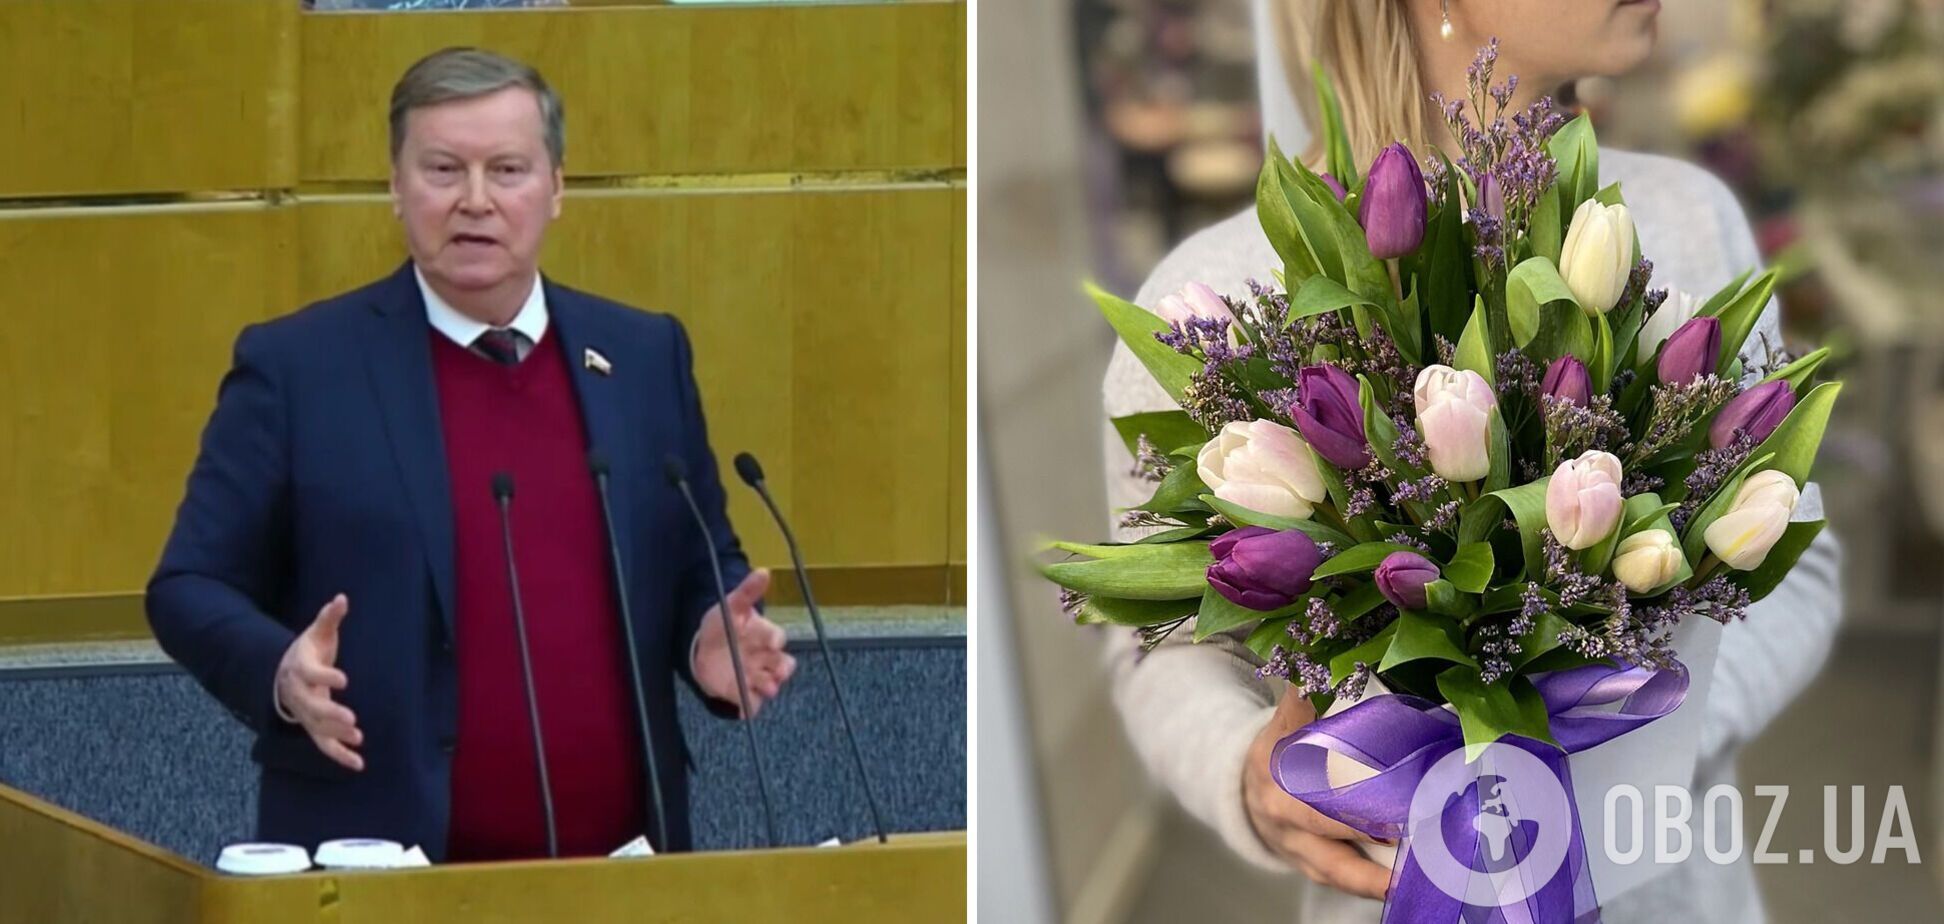 'Купил тюльпаны на 8 марта – профинансировал поставки снарядов ВСУ': в России нашли 'измену' в цветах для женщин. Видео